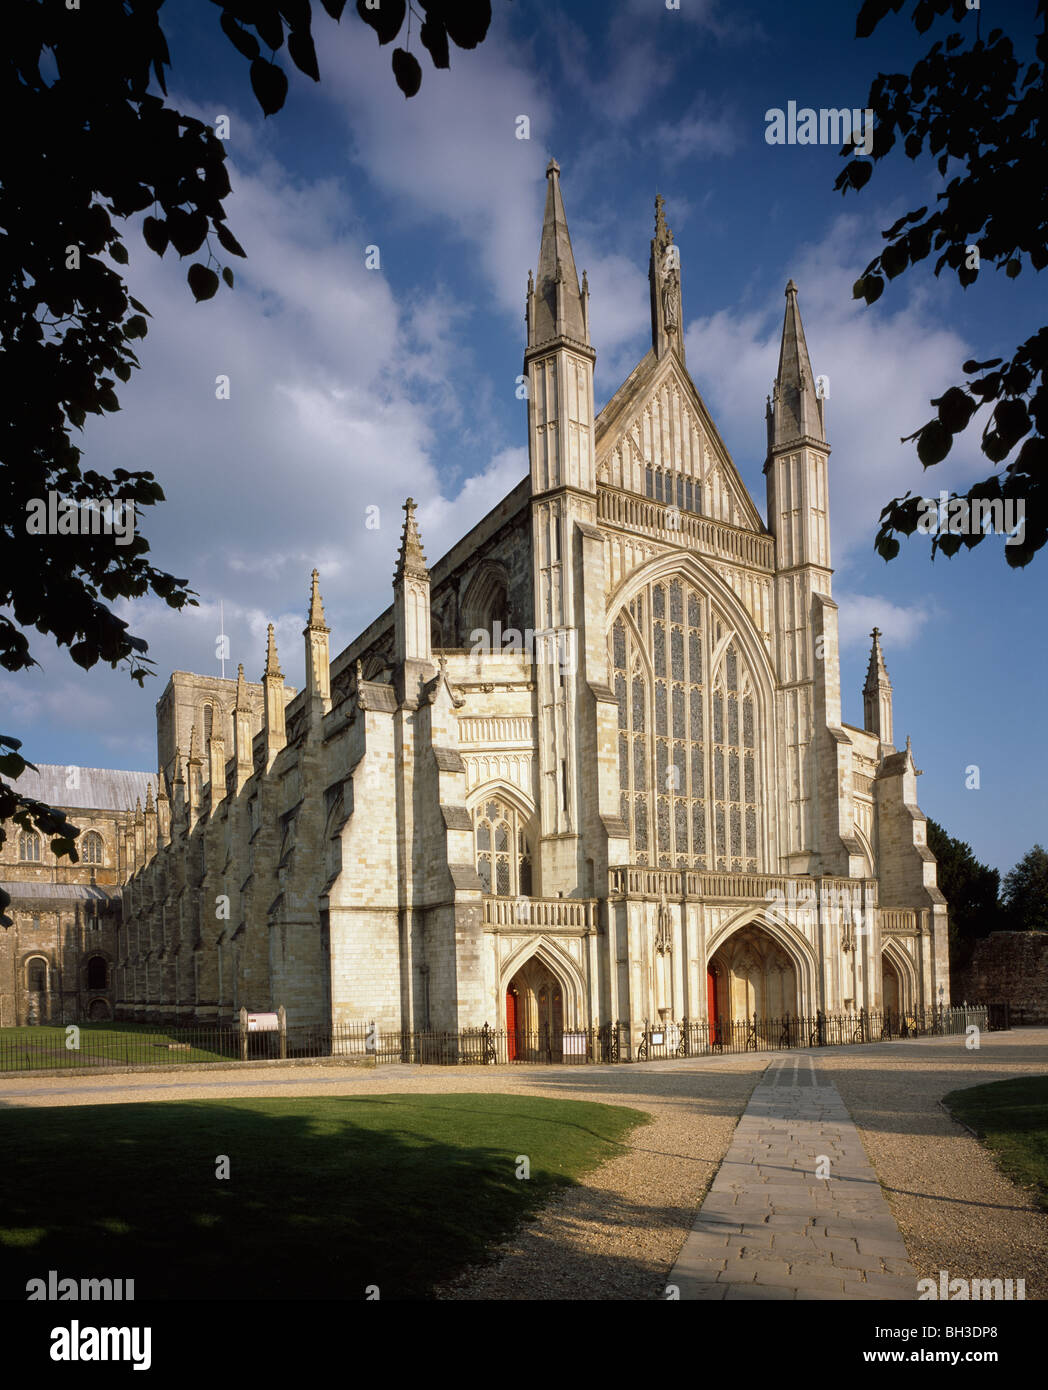 La cathédrale de Winchester, Hampshire, Angleterre. Avant de l'ouest 14e siècle rénové en style gothique anglais Banque D'Images